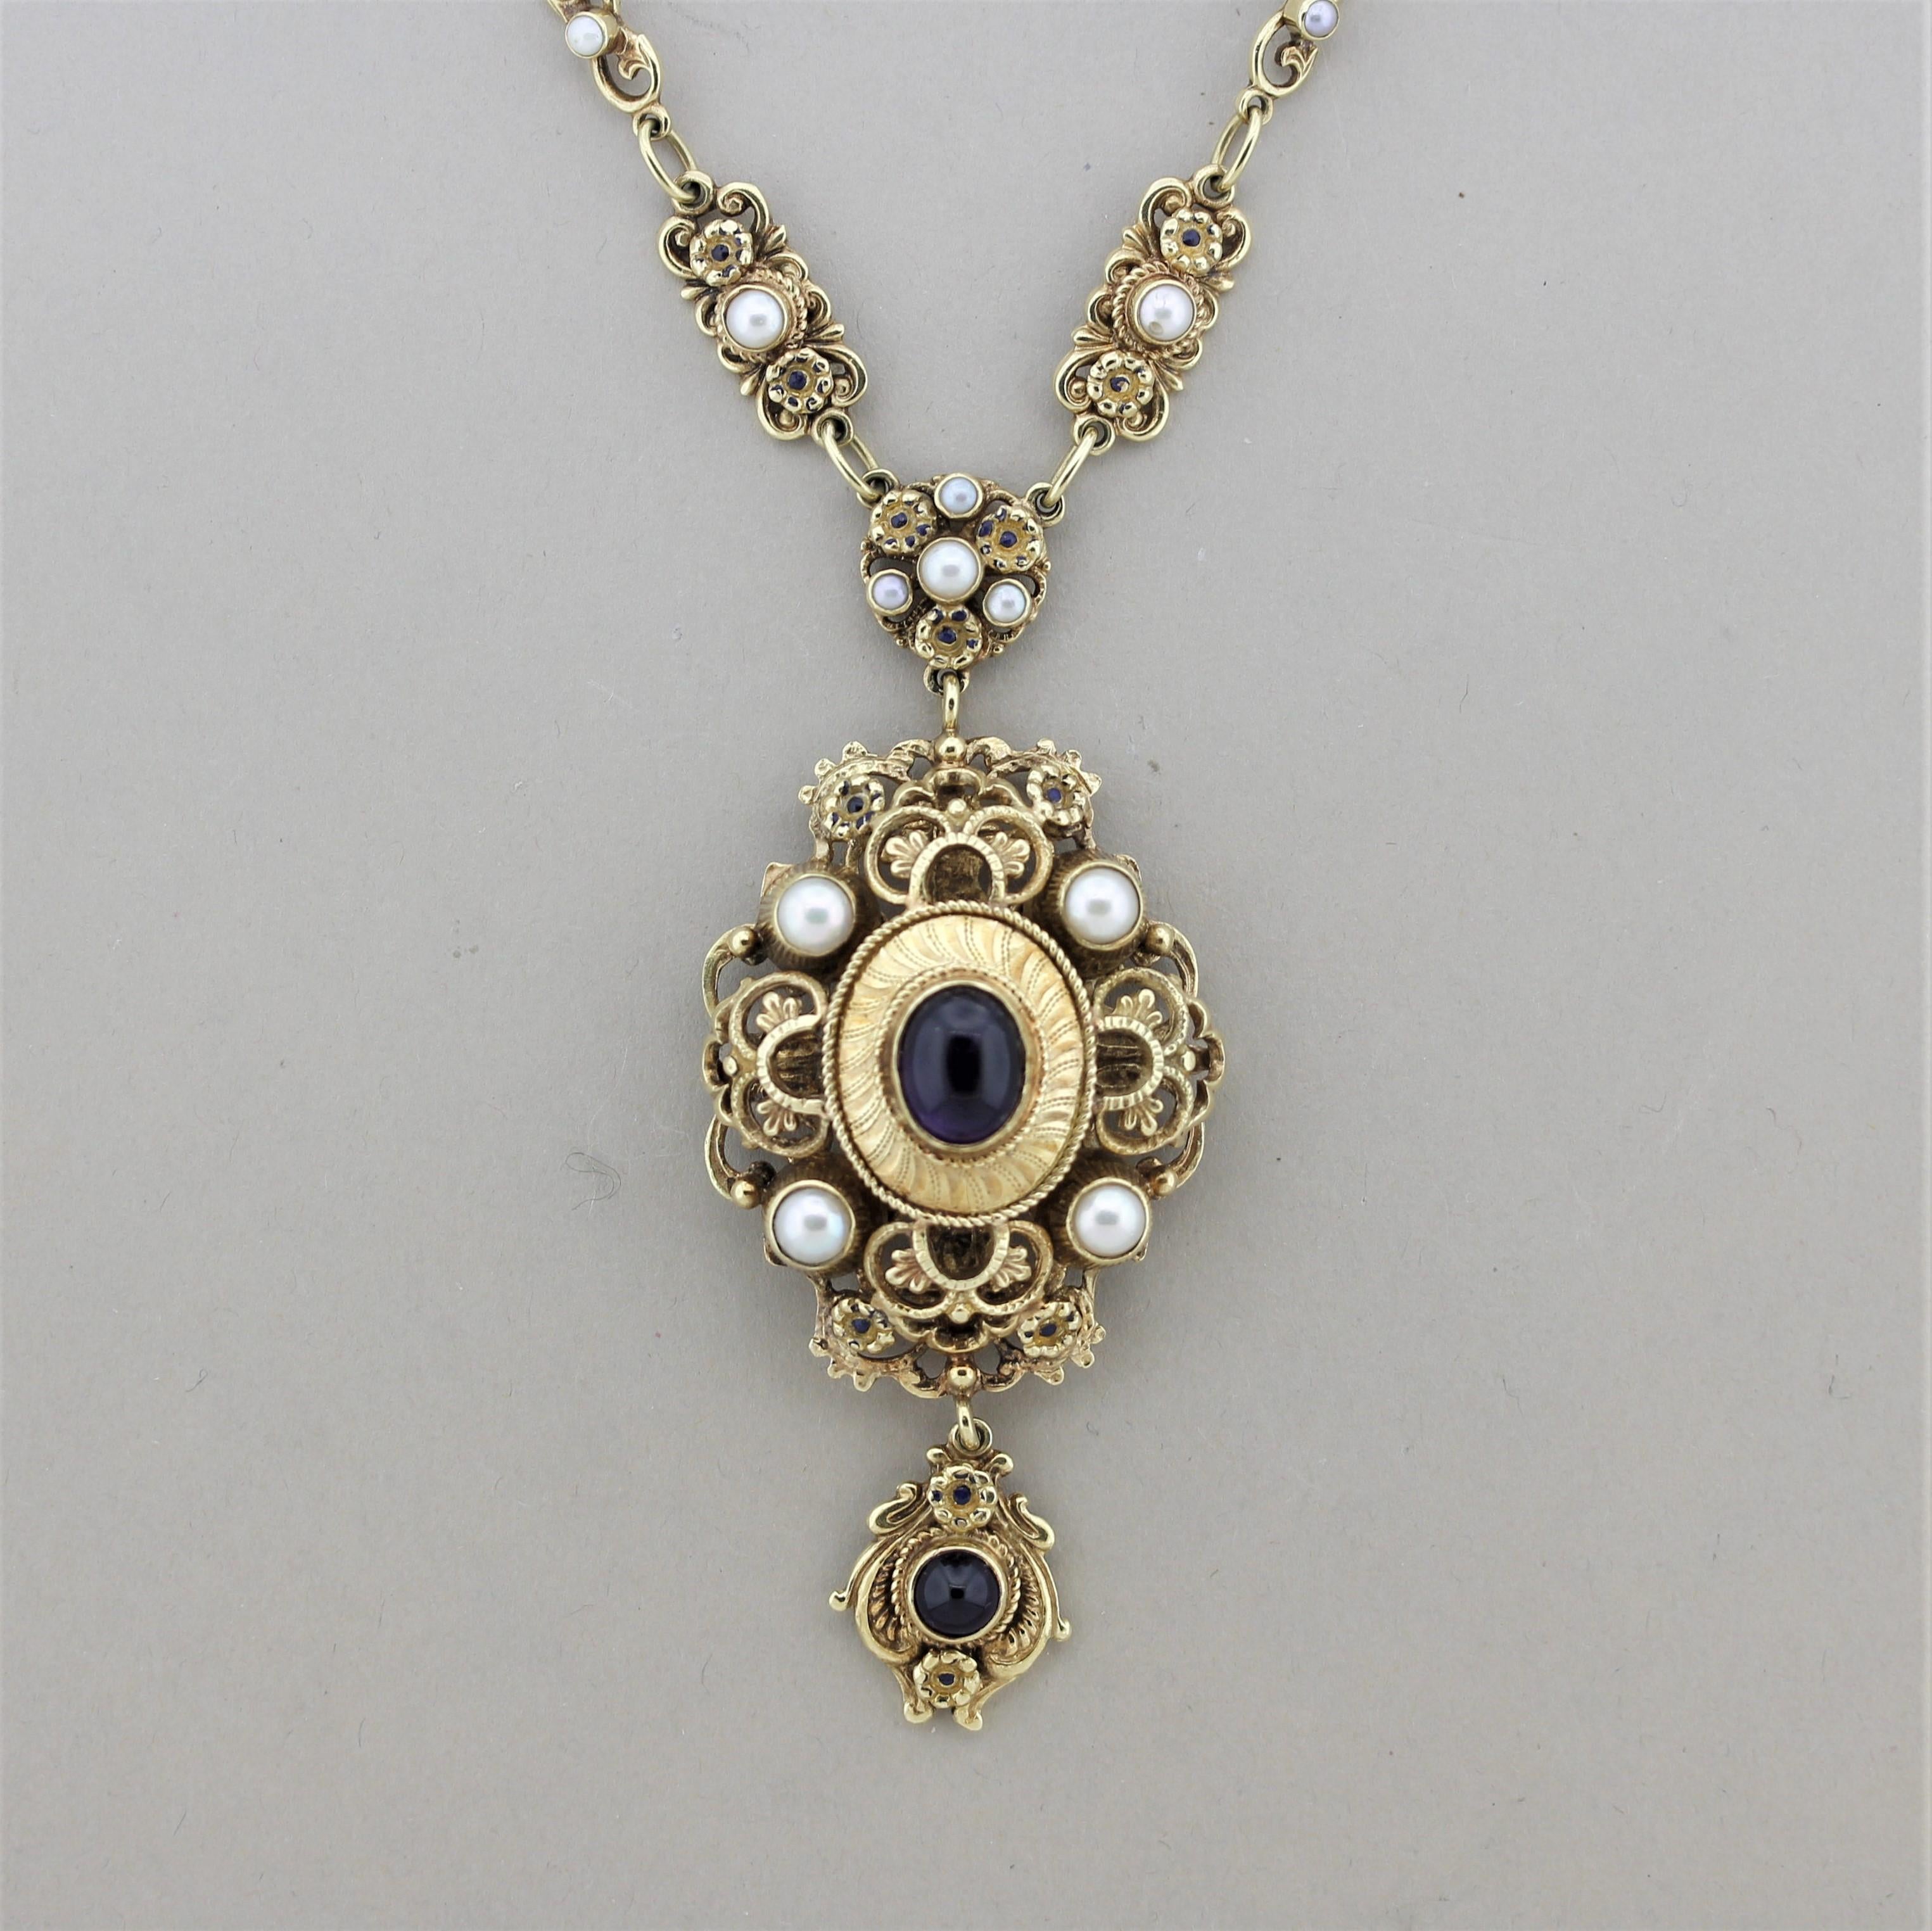 Eine große goldene Halskette im antiken Stil mit viktorianischen Elementen. Die Halskette zeigt zwei Amethyst-Cabochons und mehrere Perlen, die entlang der Kette angeordnet sind. Es gibt sowohl filigrane Goldschmiedearbeiten als auch Millgrain, die